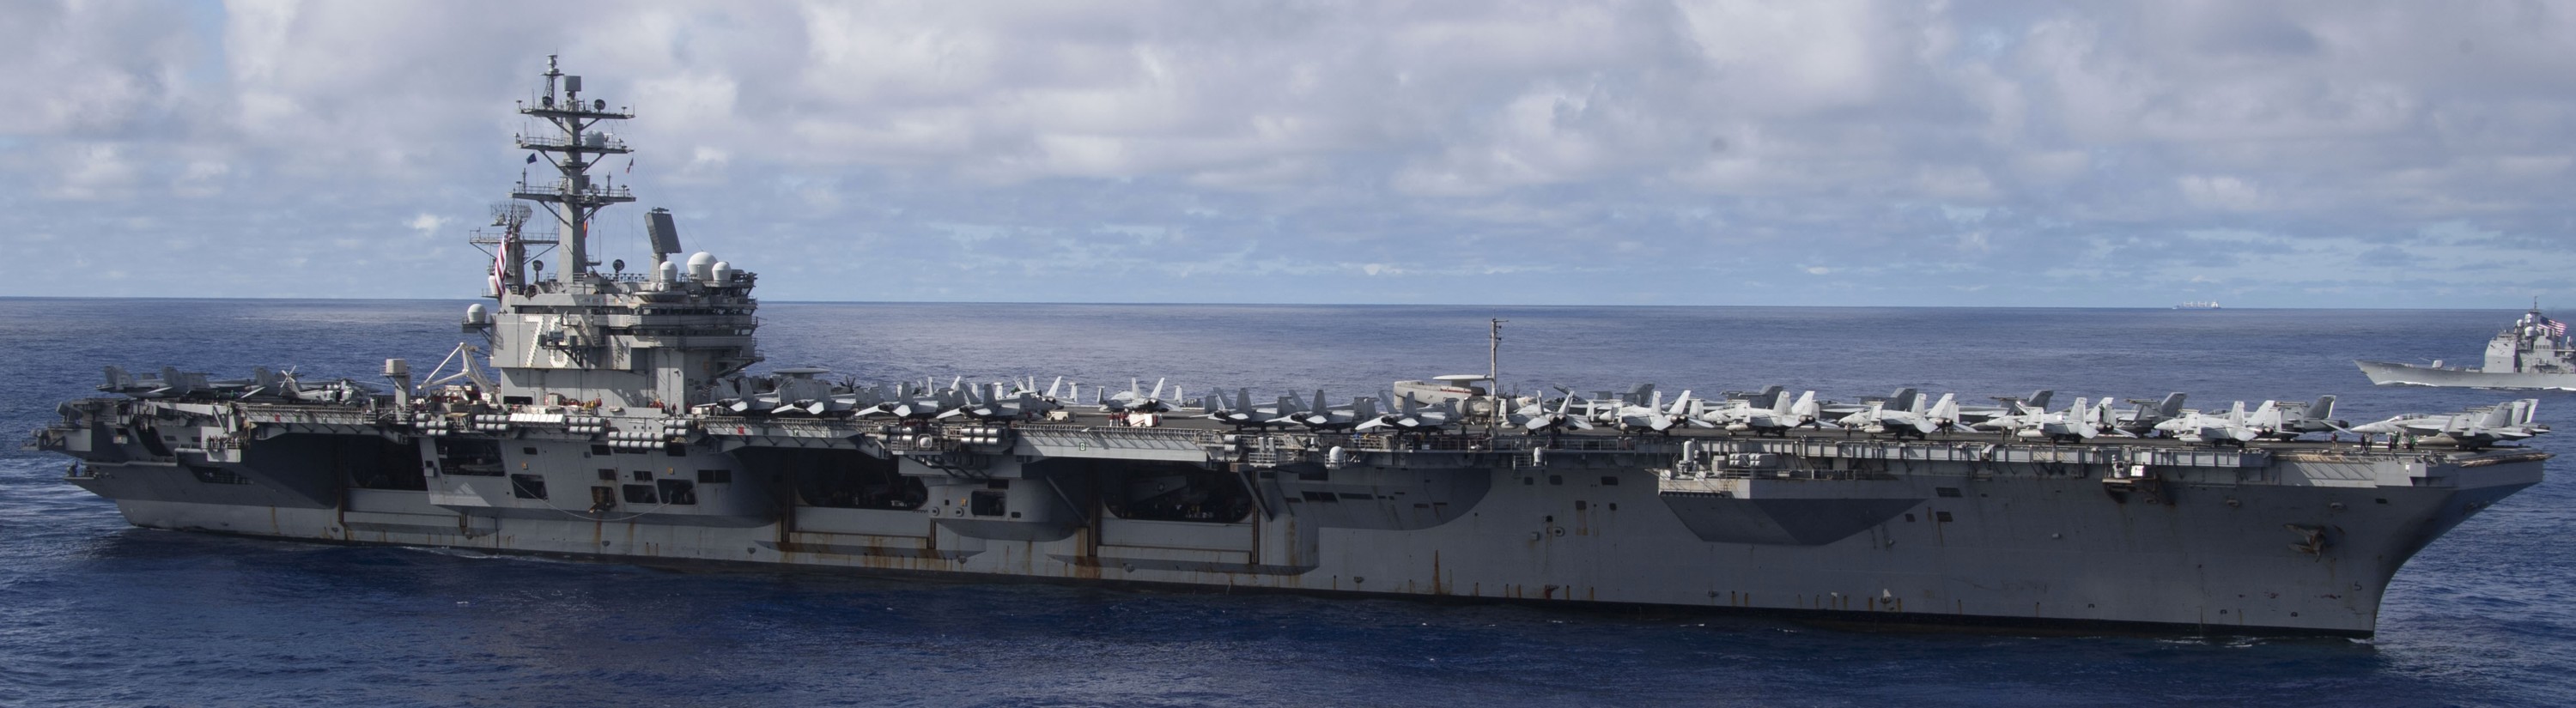 cvn-76 uss ronald reagan aircraft carrier air wing cvw-5 us navy pacific ocean 221